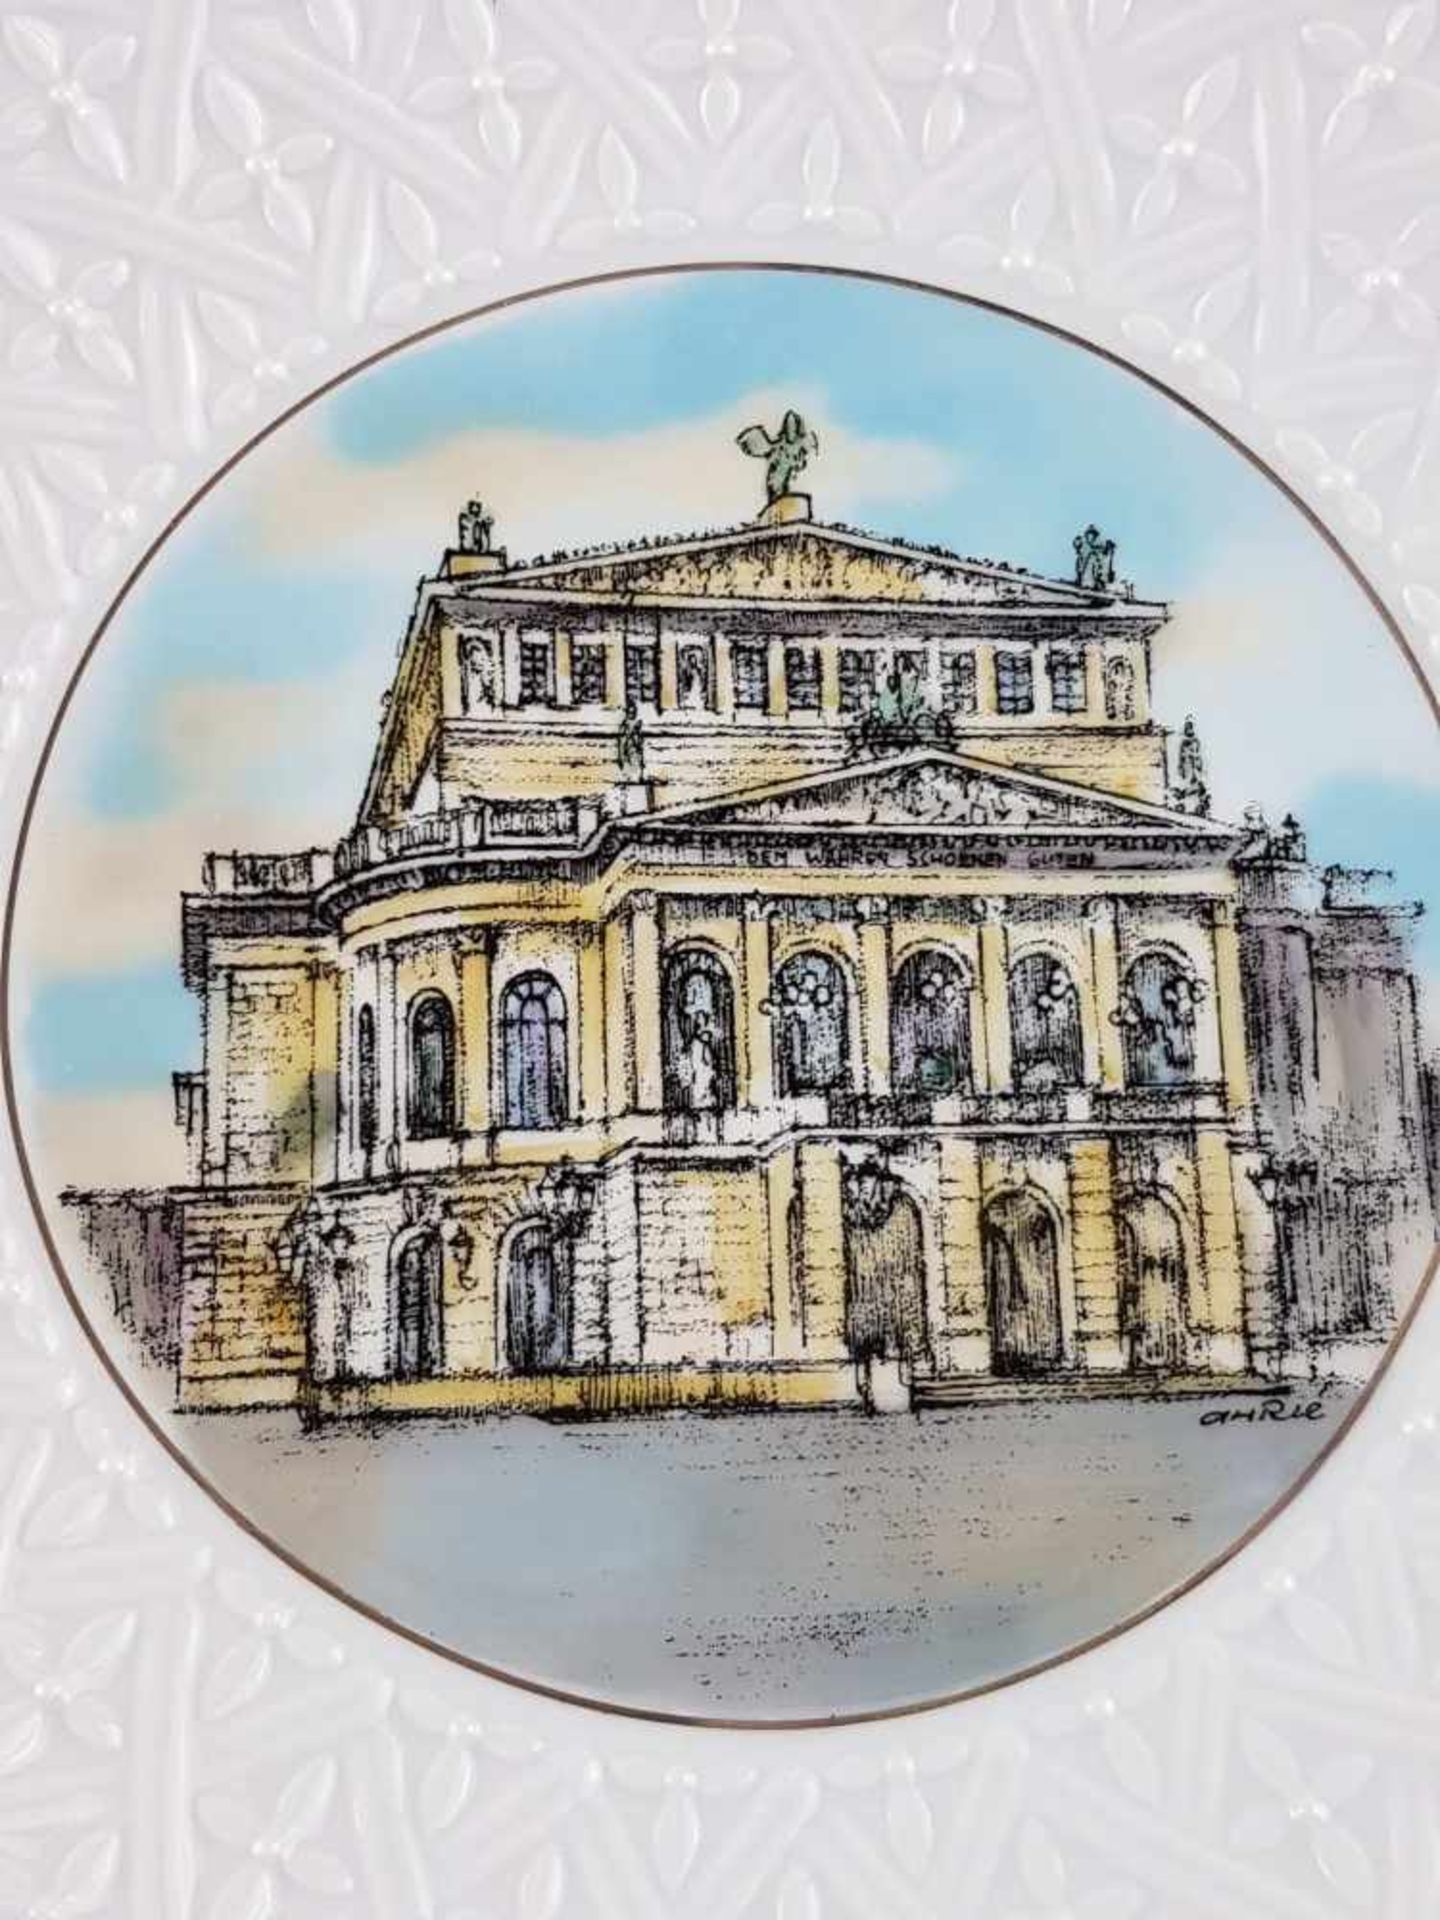 Wandteller "Alte Oper" Höchst - blaue Radmarke Höchst, Zeichnung von Ferry Ahrlé, gedrucktes Motiv - Bild 2 aus 3